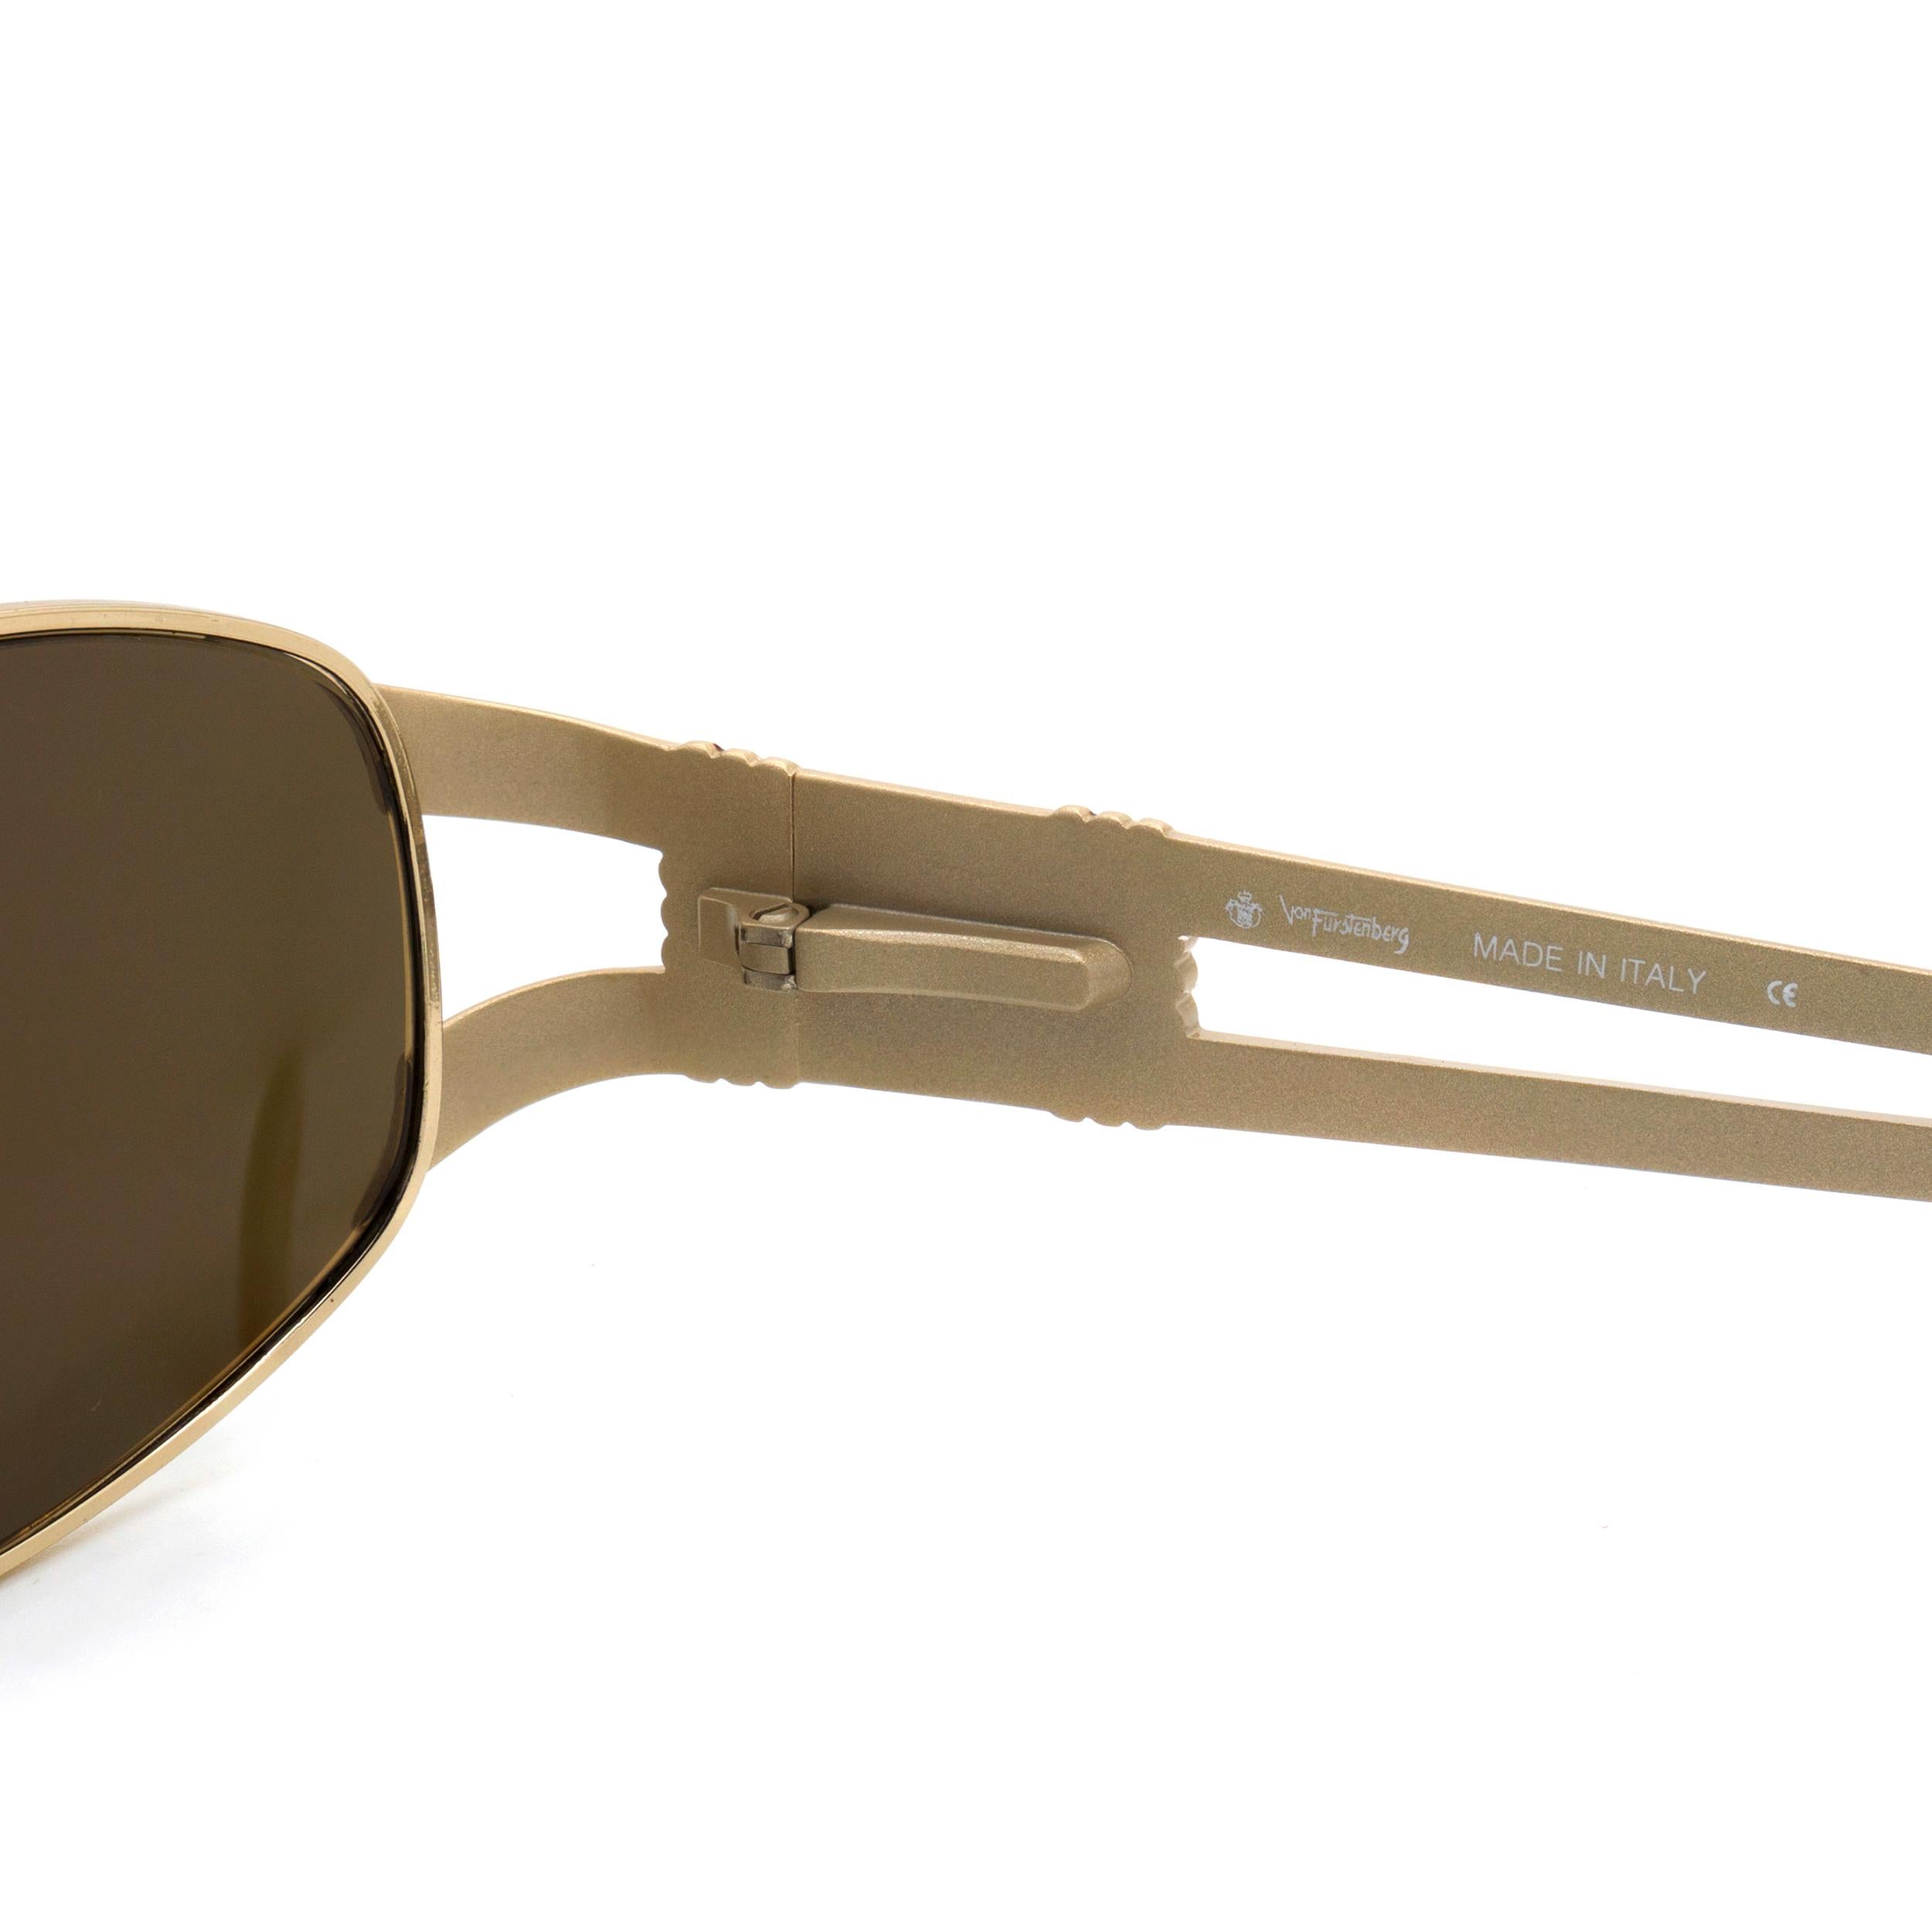 Prince Egon von Furstenberg vintage sunglasses 80s In New Condition For Sale In Santa Clarita, CA